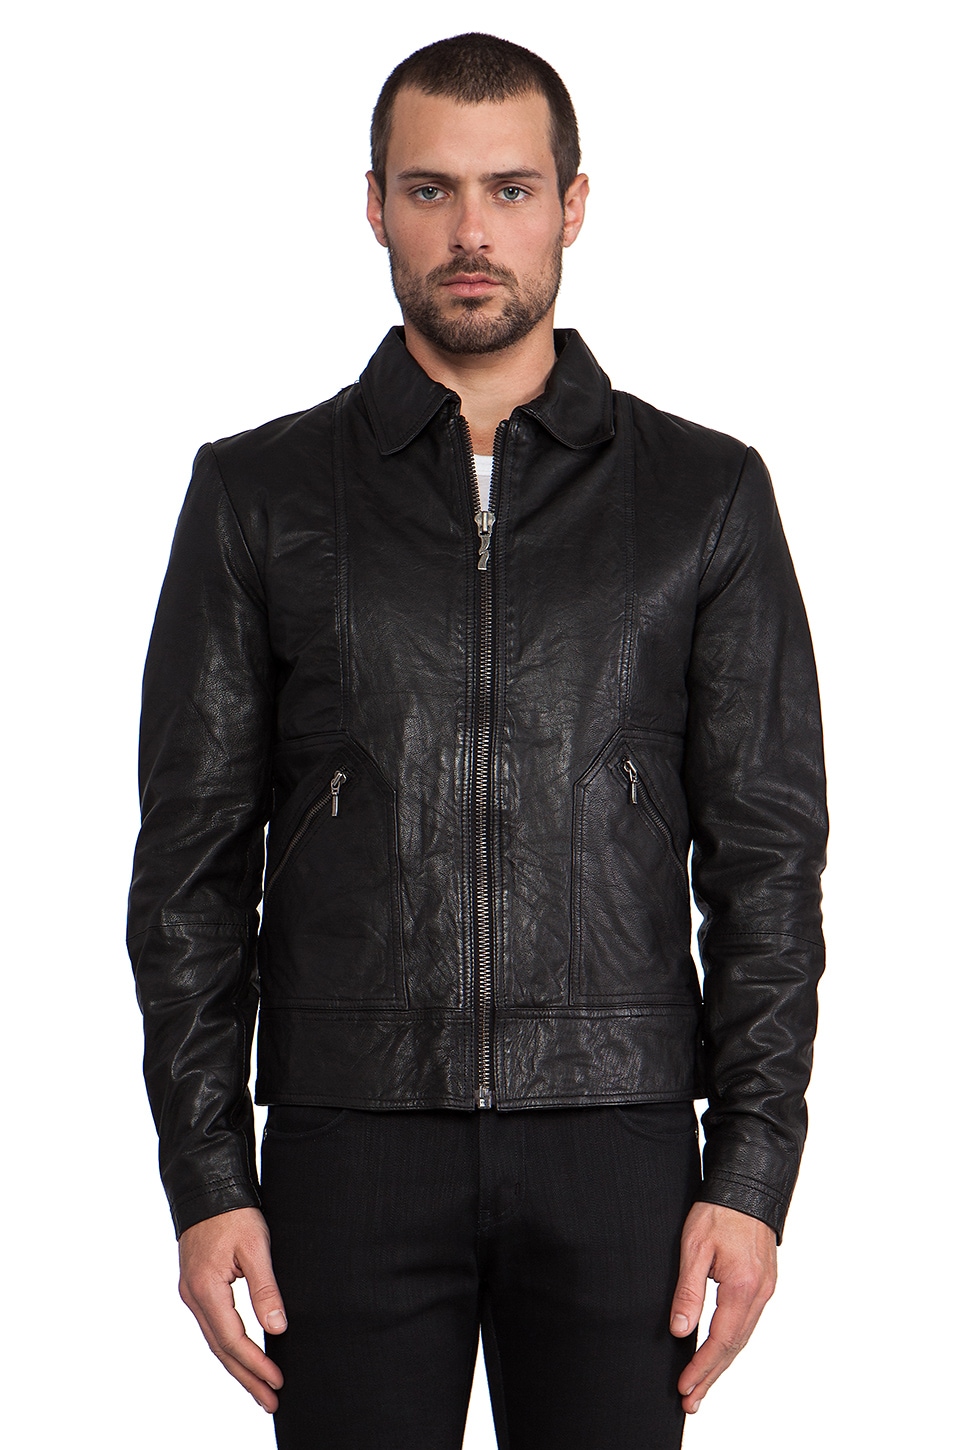 Nudie Jeans Jonny Leather Jacket in Black | REVOLVE